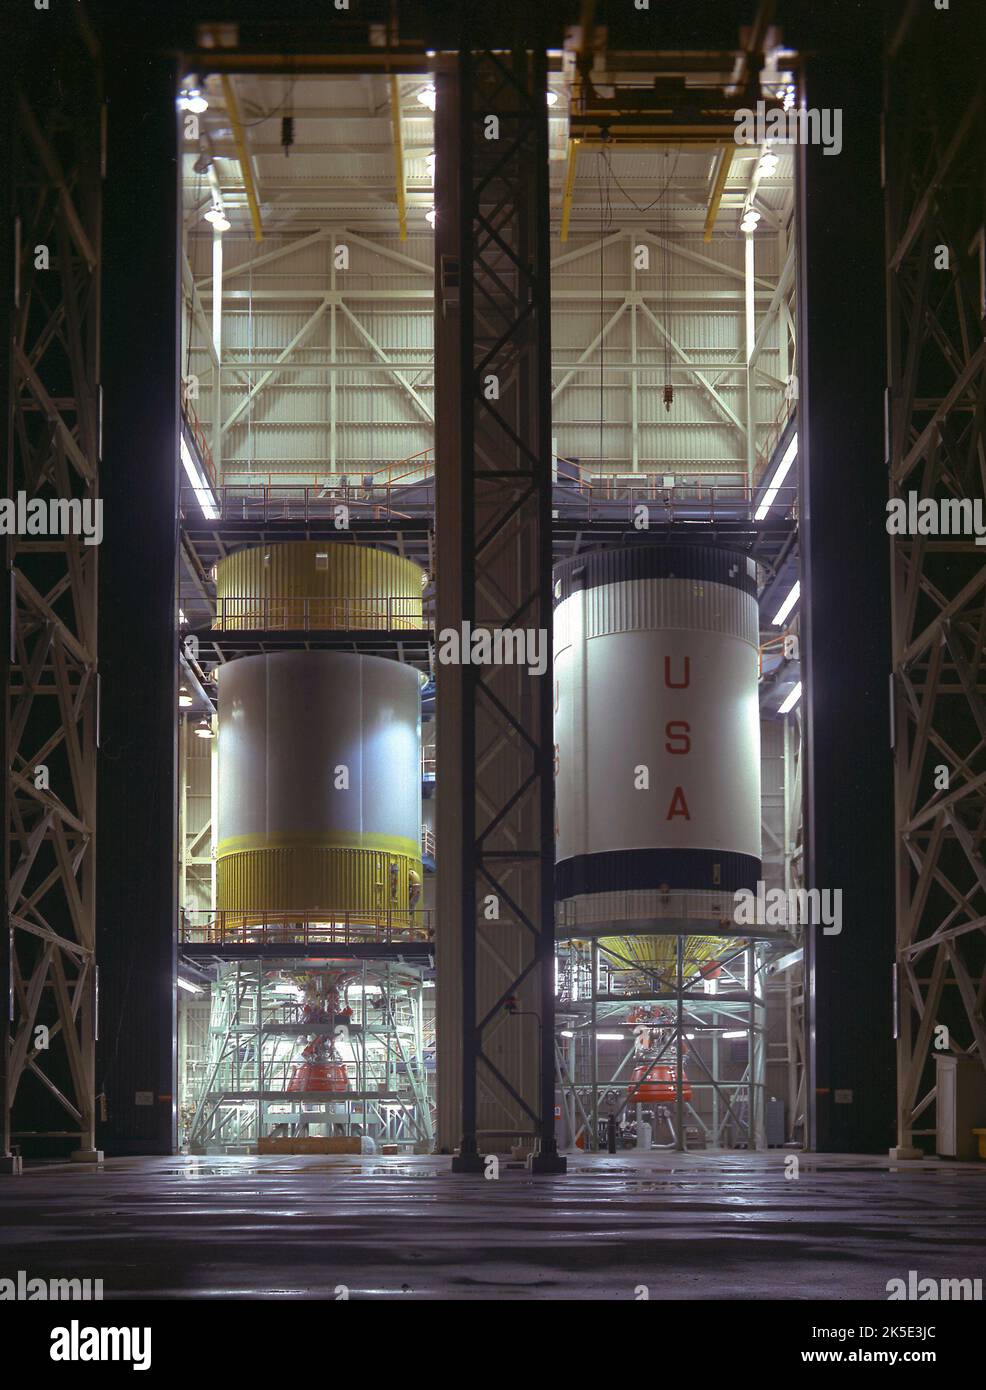 Der S-IVB-Vertragspartner von Apollo McDonnell Douglas hat am 9. Dezember 1966 die Werksauscheckzeit der S-IVB-504-Flugbühne in Huntington Beach, Kalifornien, abgeschlossen. Die S 9-IVB-Bühne wurde unter der Leitung des Marshall Space Flight Center der NASA entwickelt und von einem J-2-Motor angetrieben, der 225.000 Pfund Schub produzieren konnte. Hier werden die S-IVB-505 und S-IVB-211 im McDonnell Douglas S-IVB Assembly and Checkout Tower gezeigt. Apollo 8 war der erste bemannte Flug des Saturn V-Fahrzeugs und die erste bemannte Mondbahnmission. Ein optimiertes NASA-Bild: Quelle: NASA Stockfoto